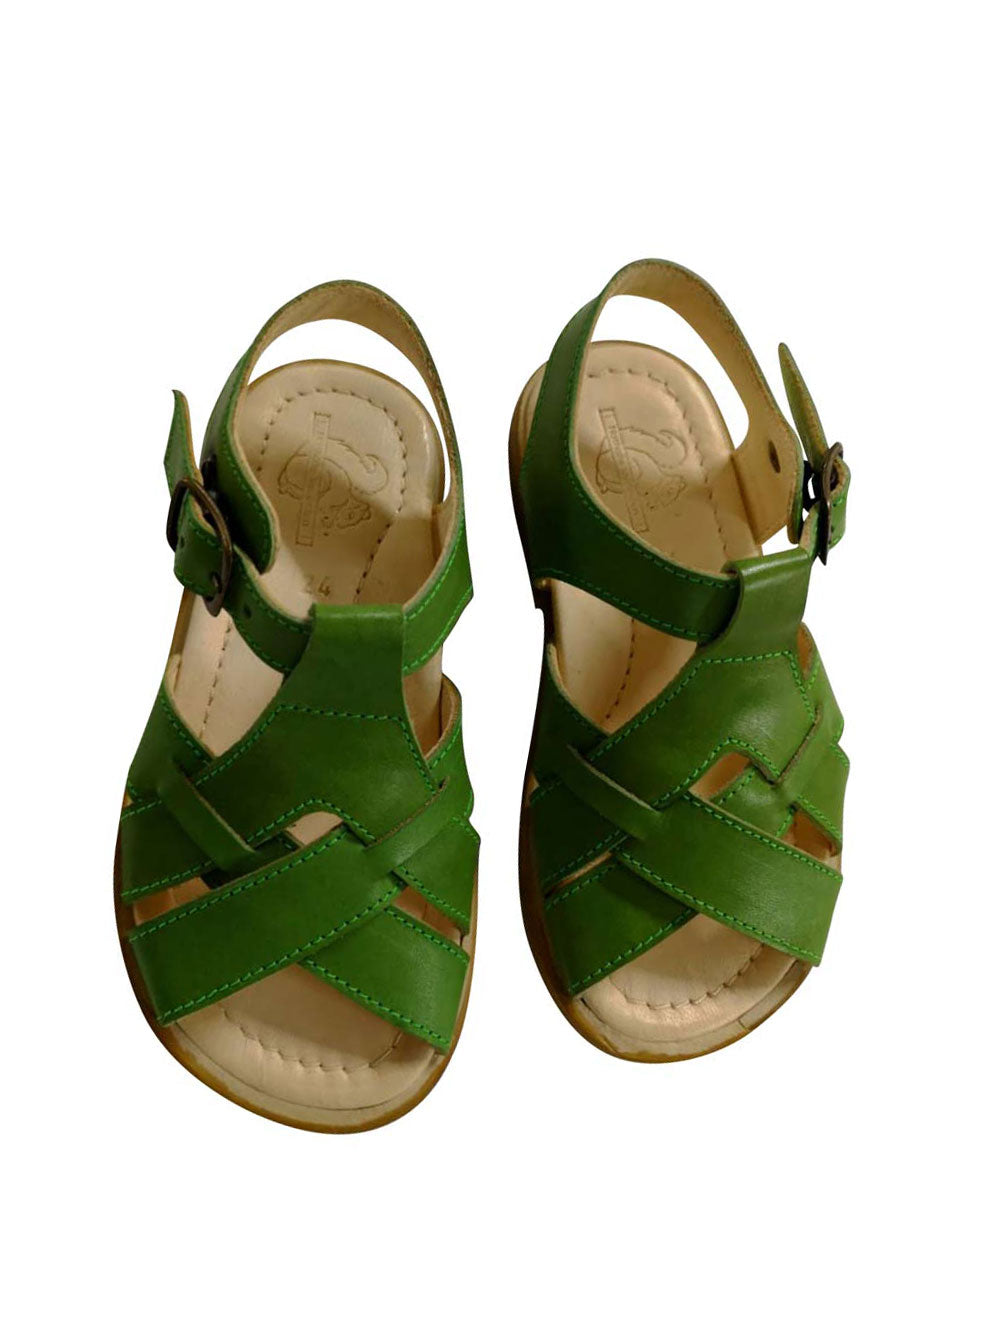 Colette Lattuga Sandals